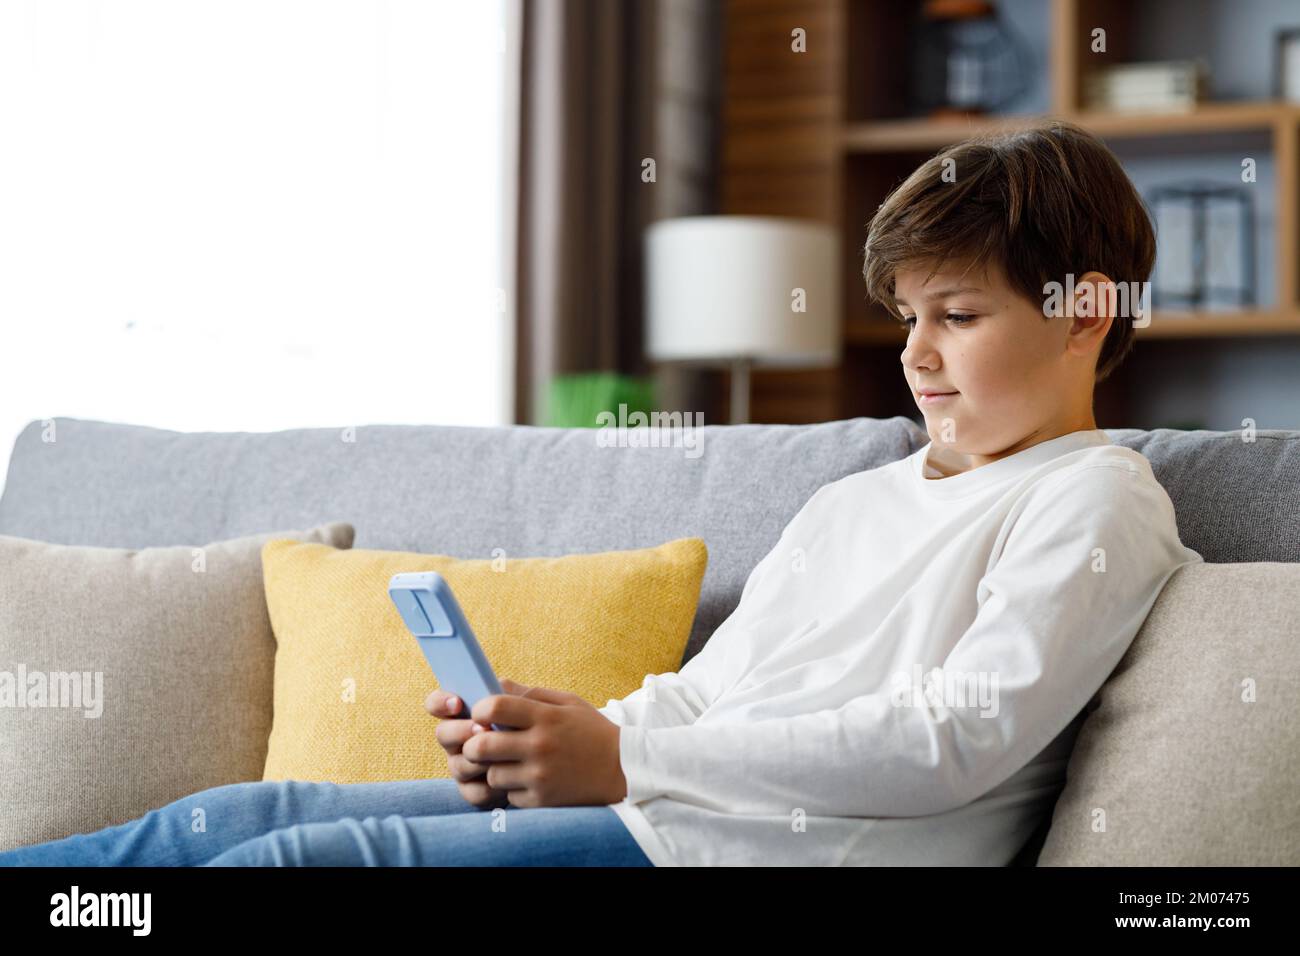 Portrait d'un jeune garçon mignon tenant un smartphone assis sur un canapé. Adolescent à la maison en choisissant votre musique préférée, en envoyant des messages texte, en naviguant sur Internet, en regardant Banque D'Images